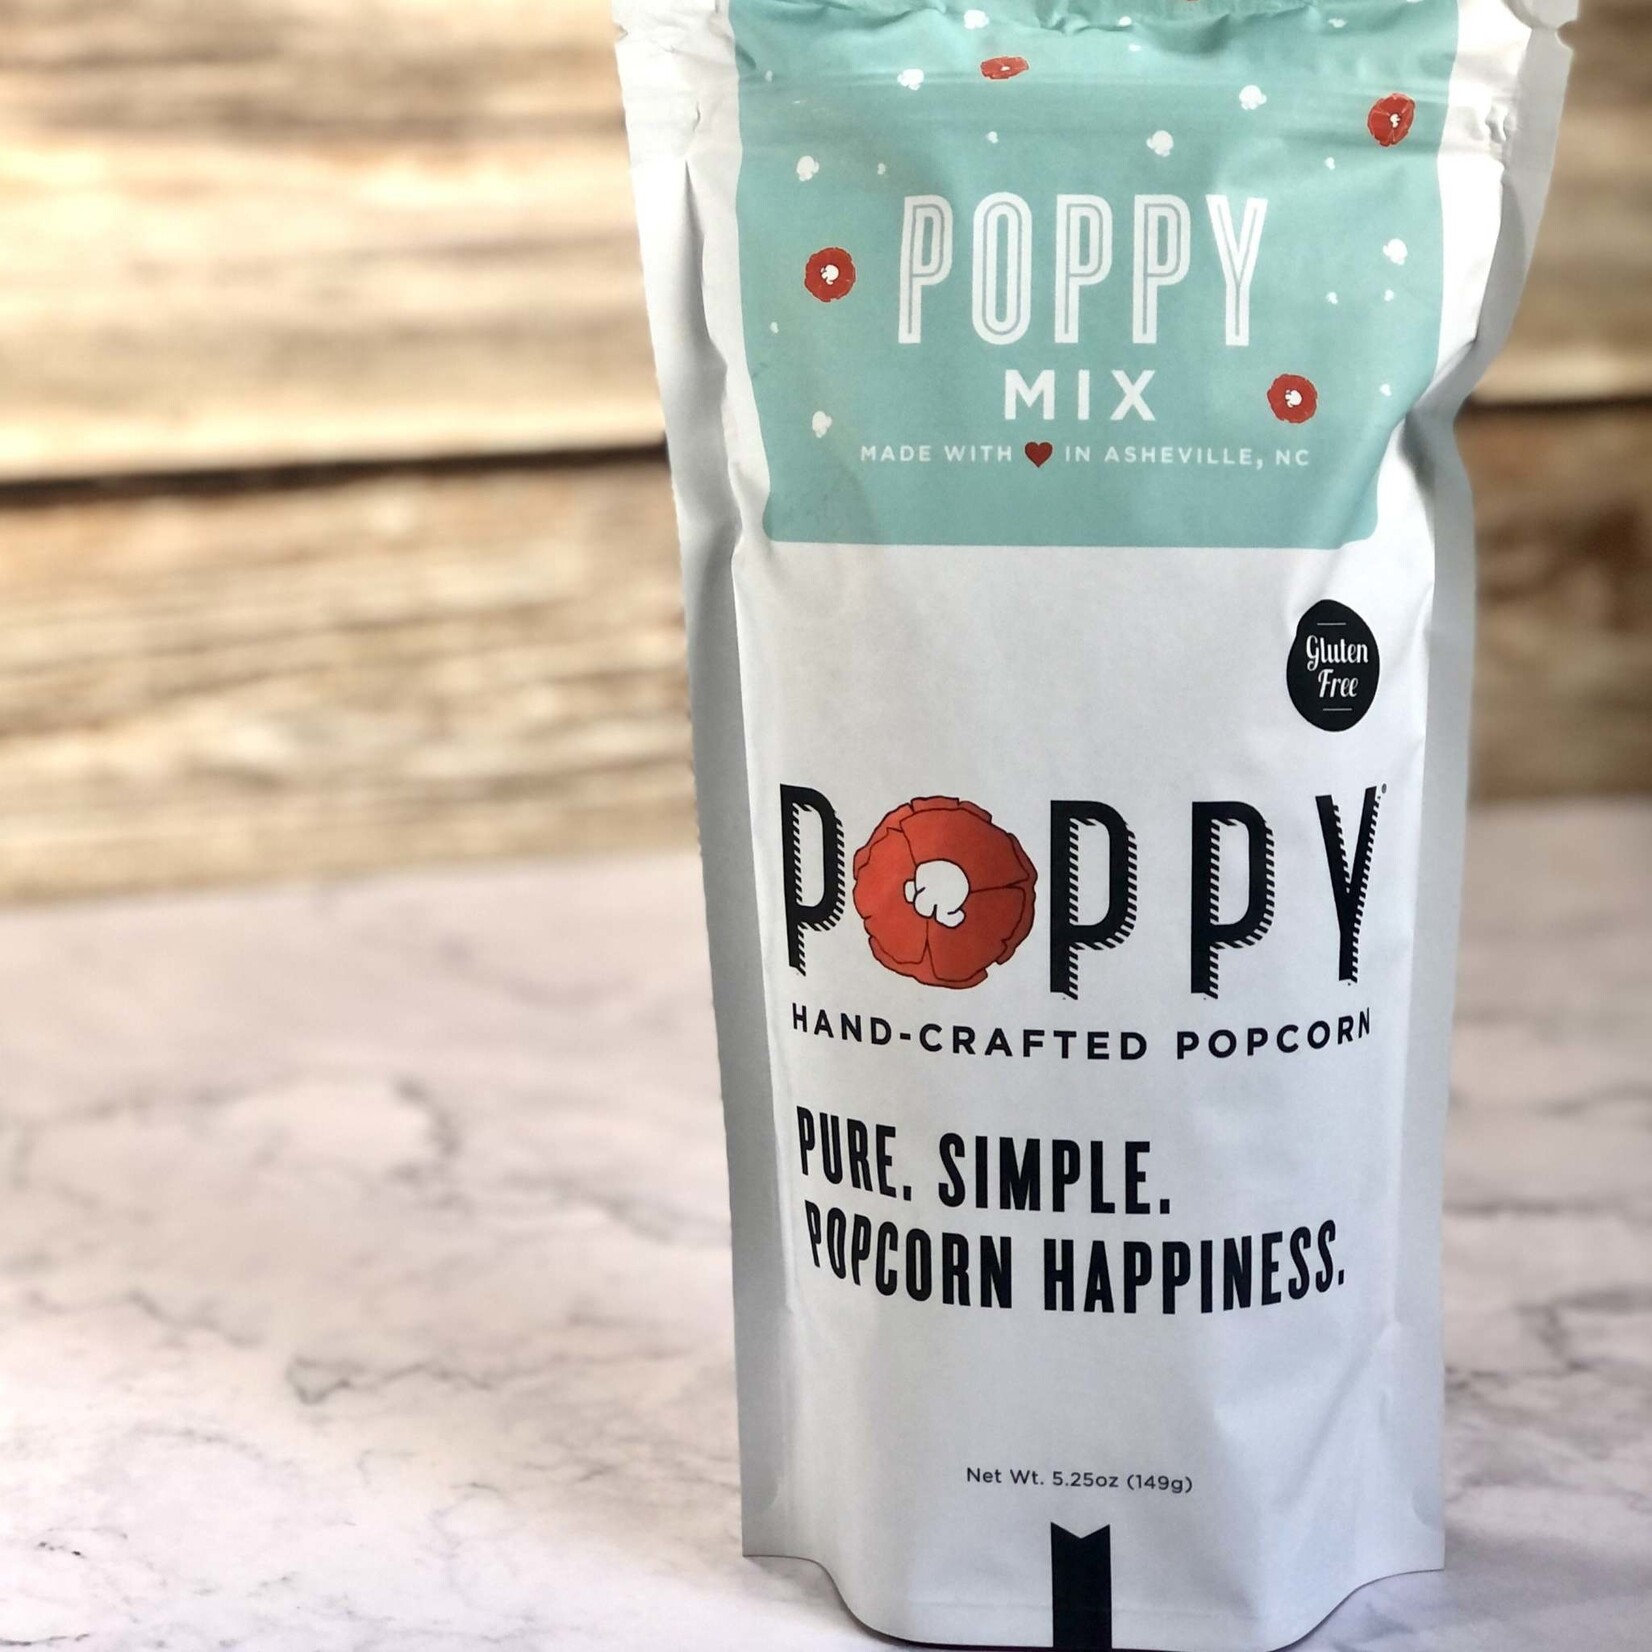 Poppy Handcrafted Popcorn Poppy Popcorn - Poppy Mix